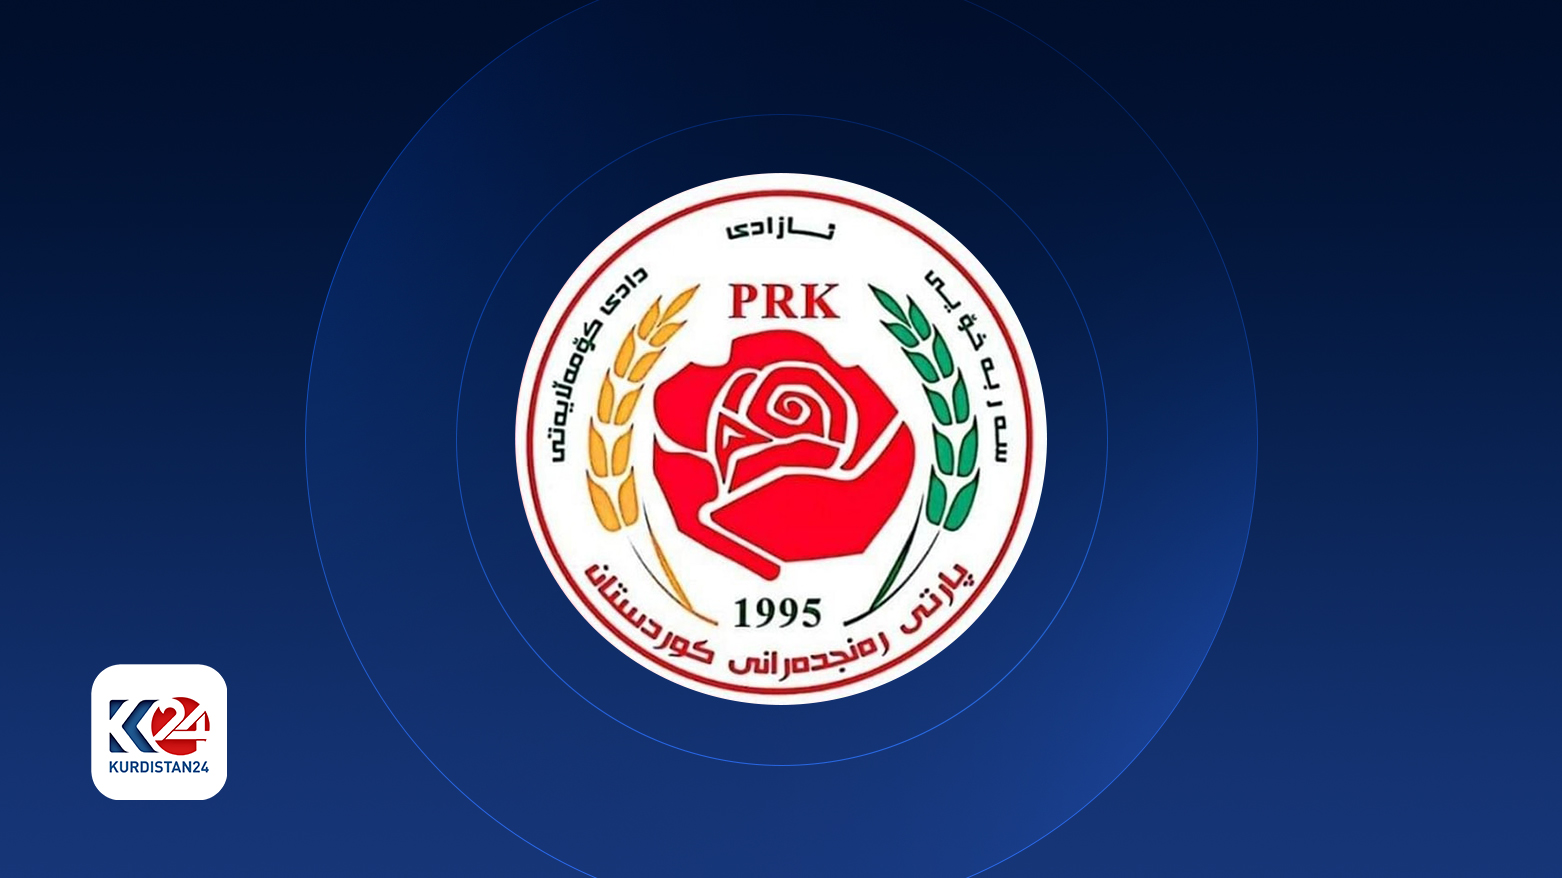 لوگوی حزب رنجدران کوردستان